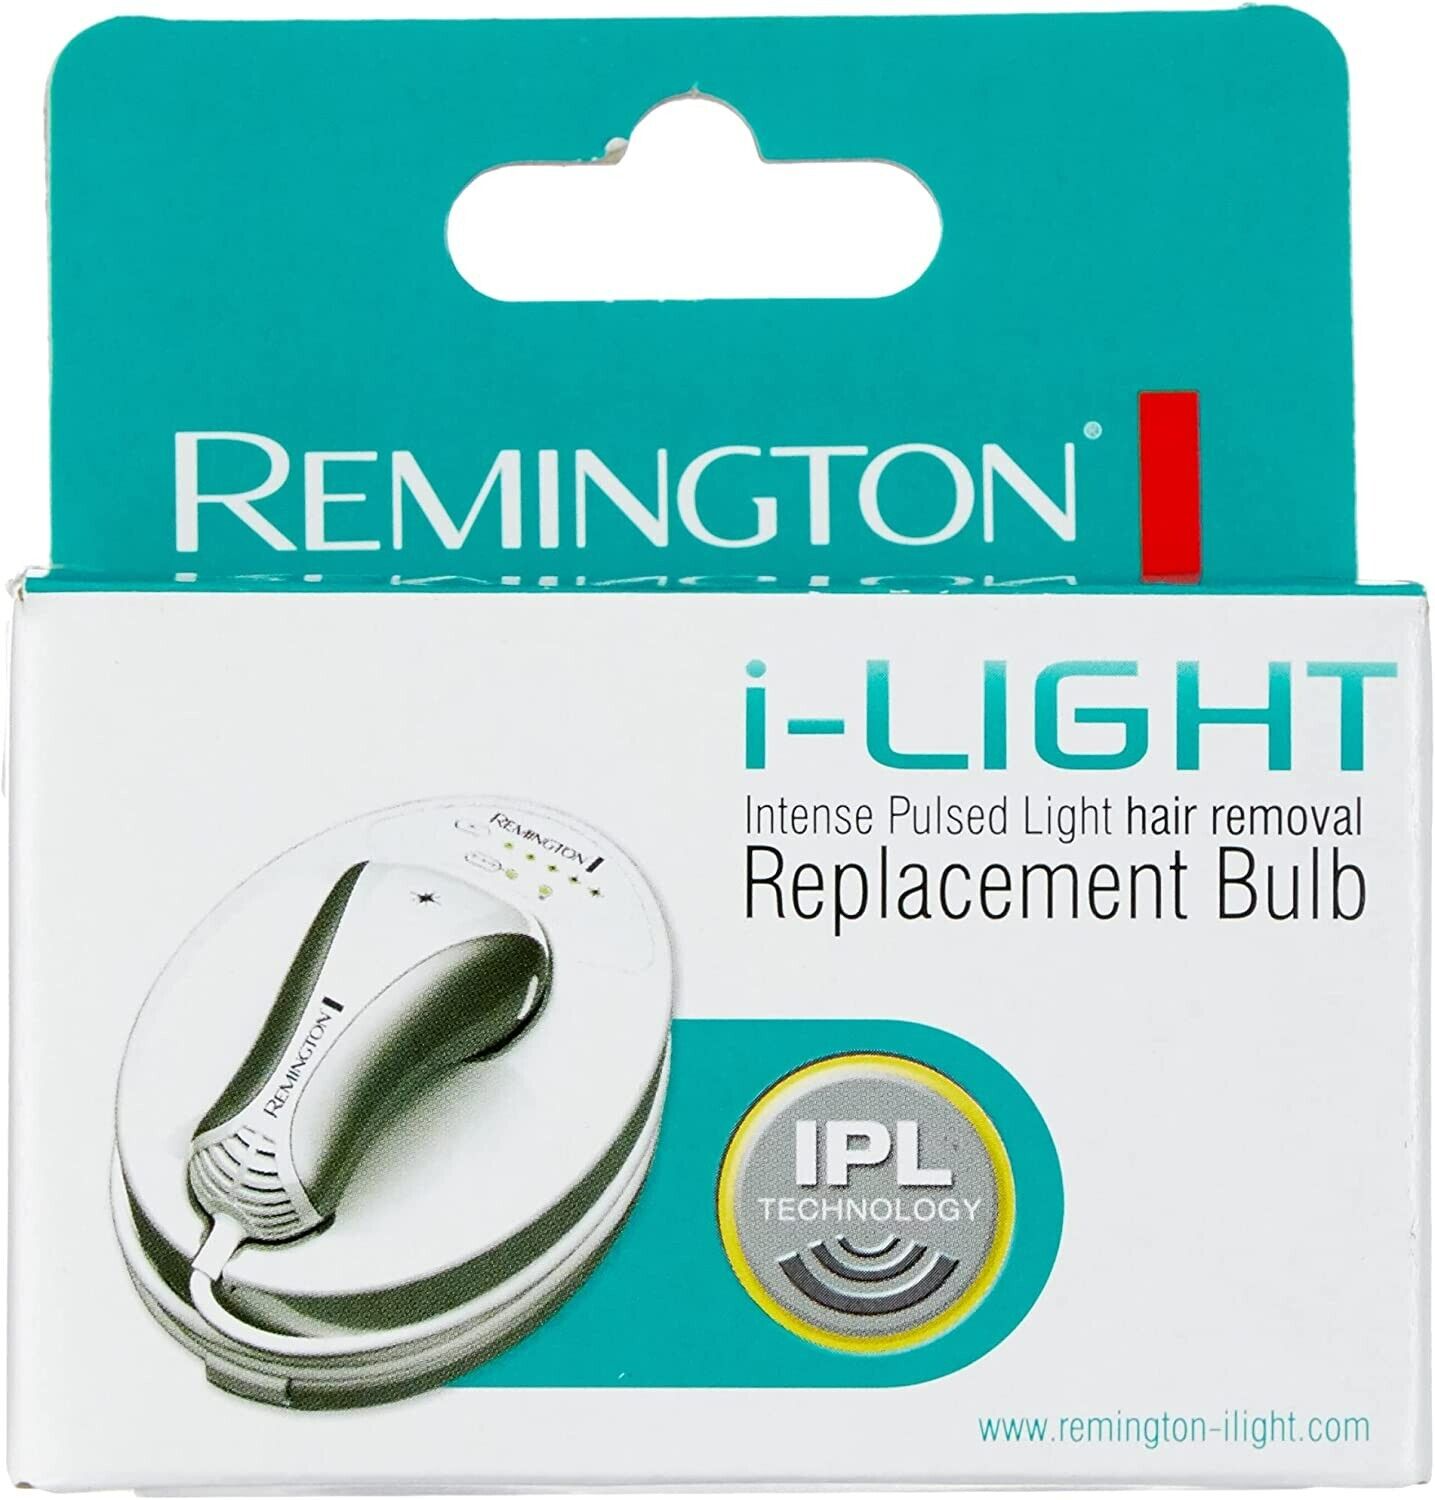 Remington lampada epilatore luce pulsata iLight IPL6250 IPL6500 IPL6750 IPL6780